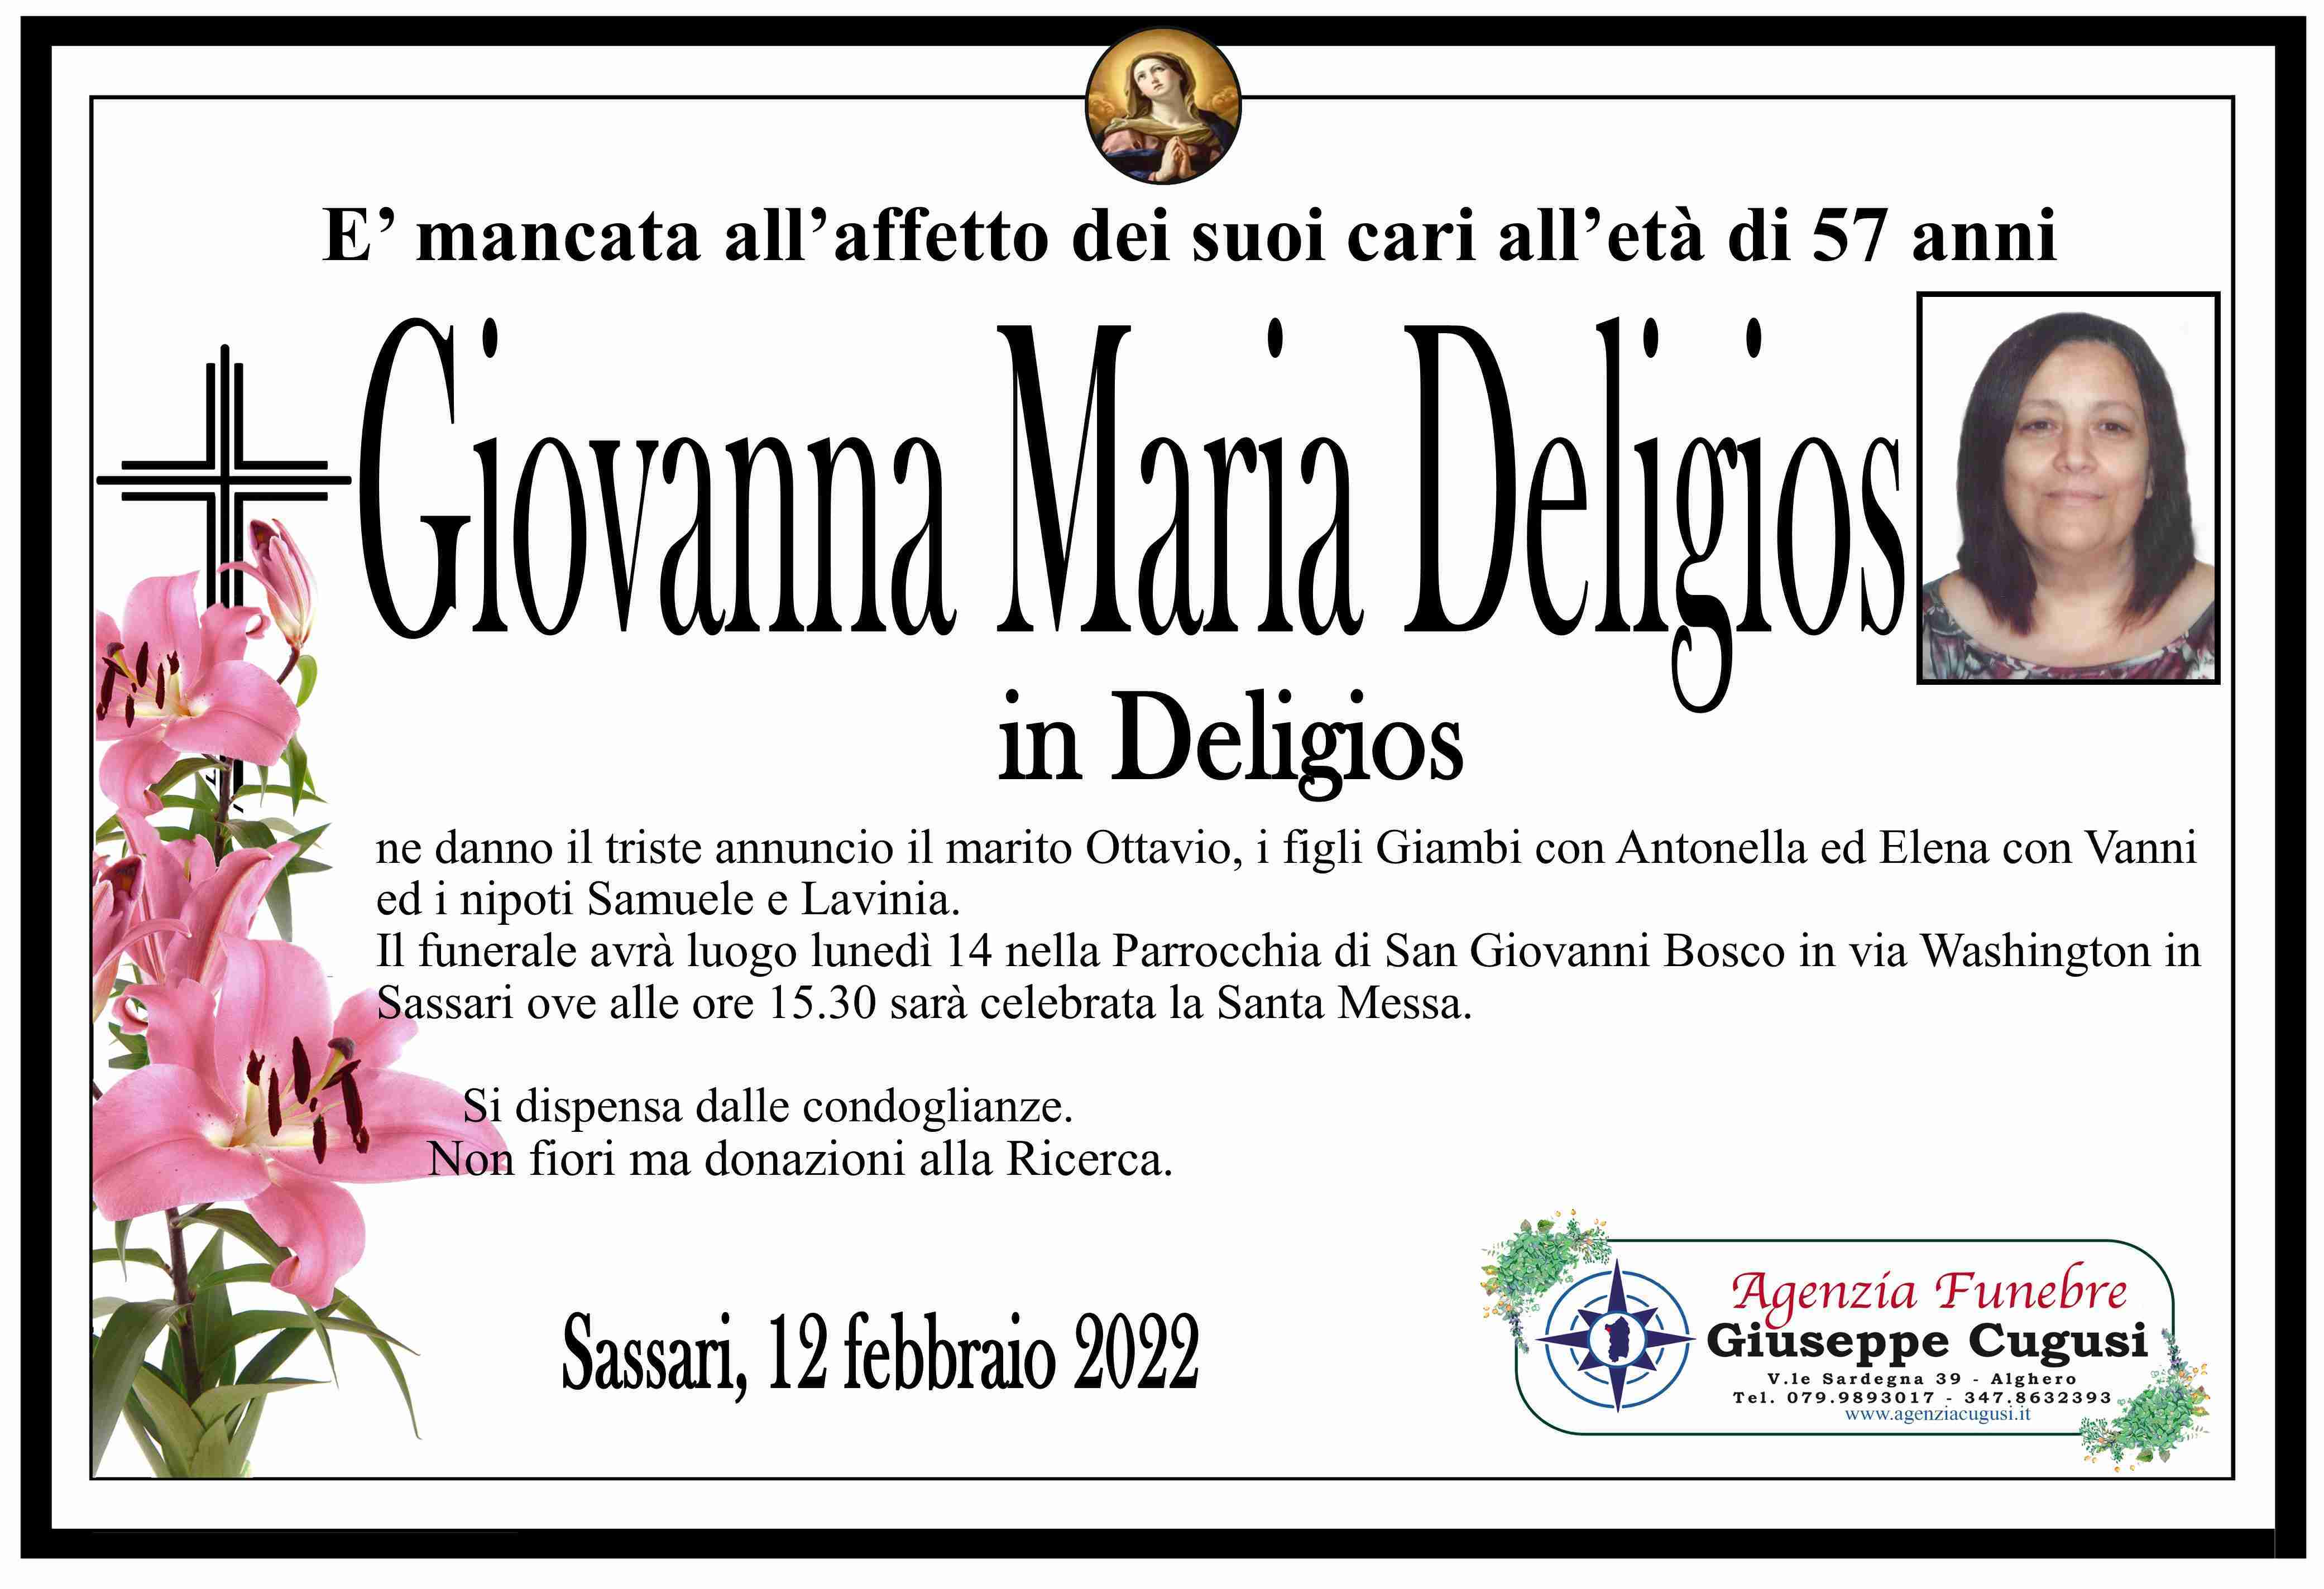 Giovanna Maria Deligios